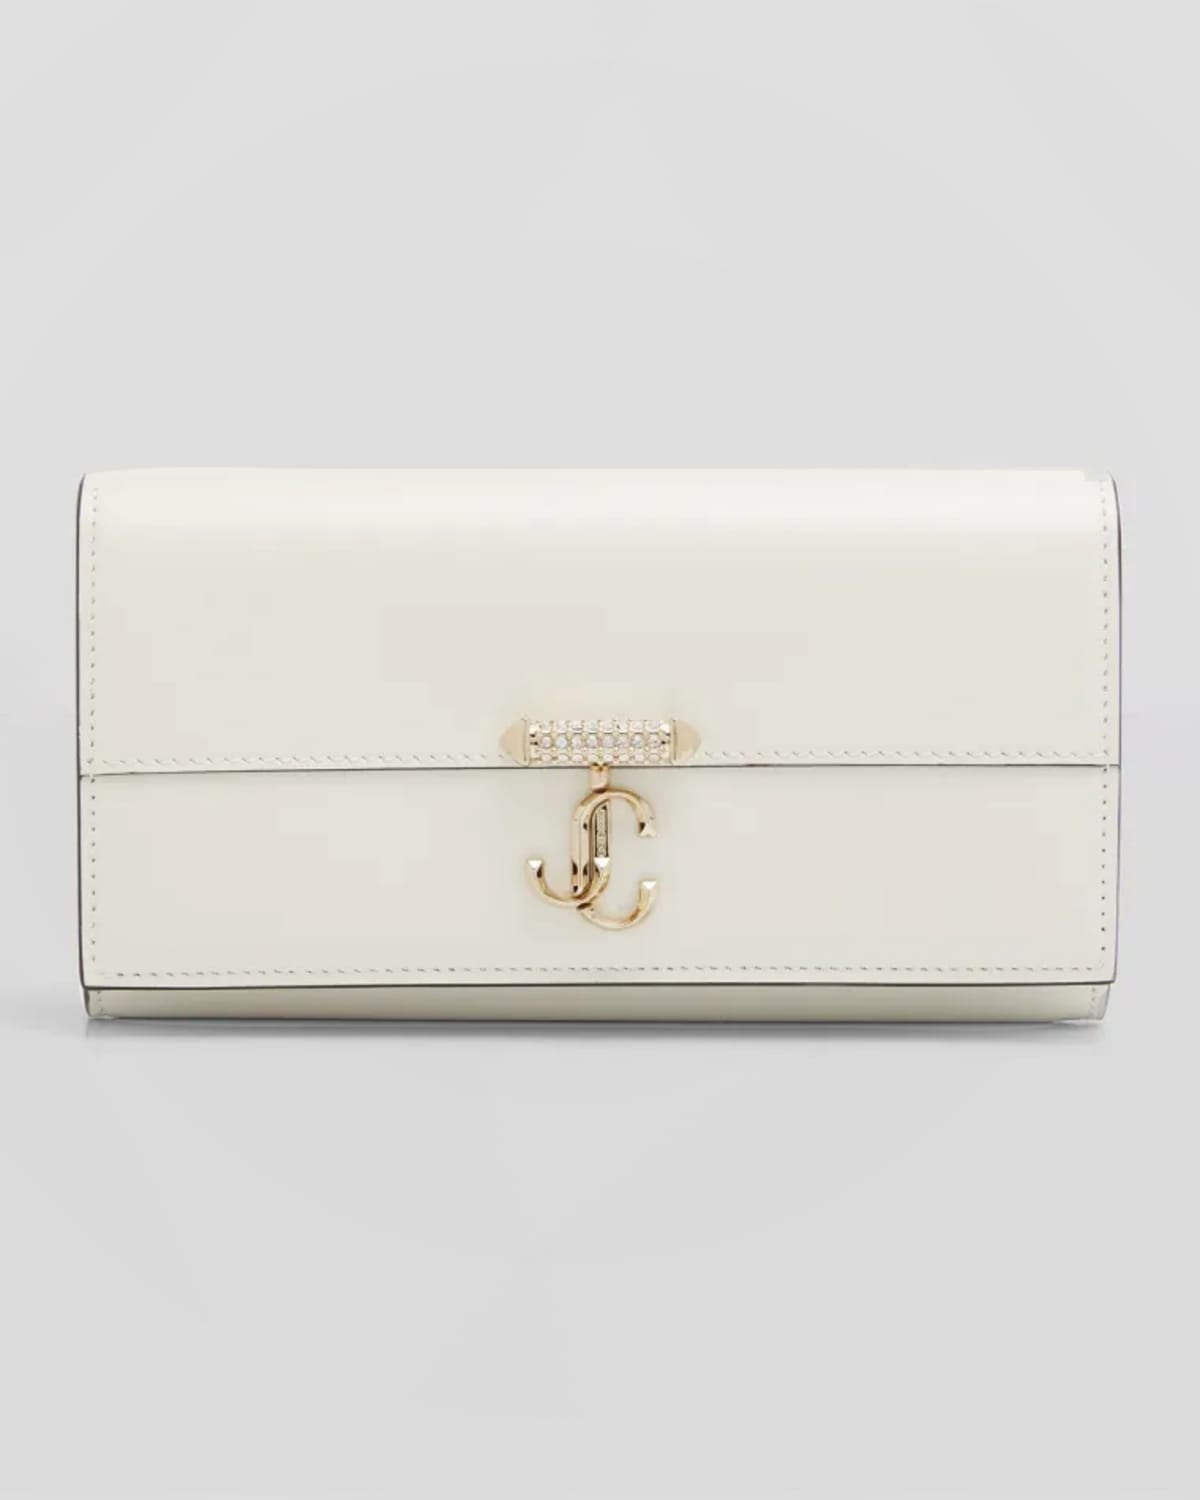 Varenne Leather Wallet with Embellished Strap